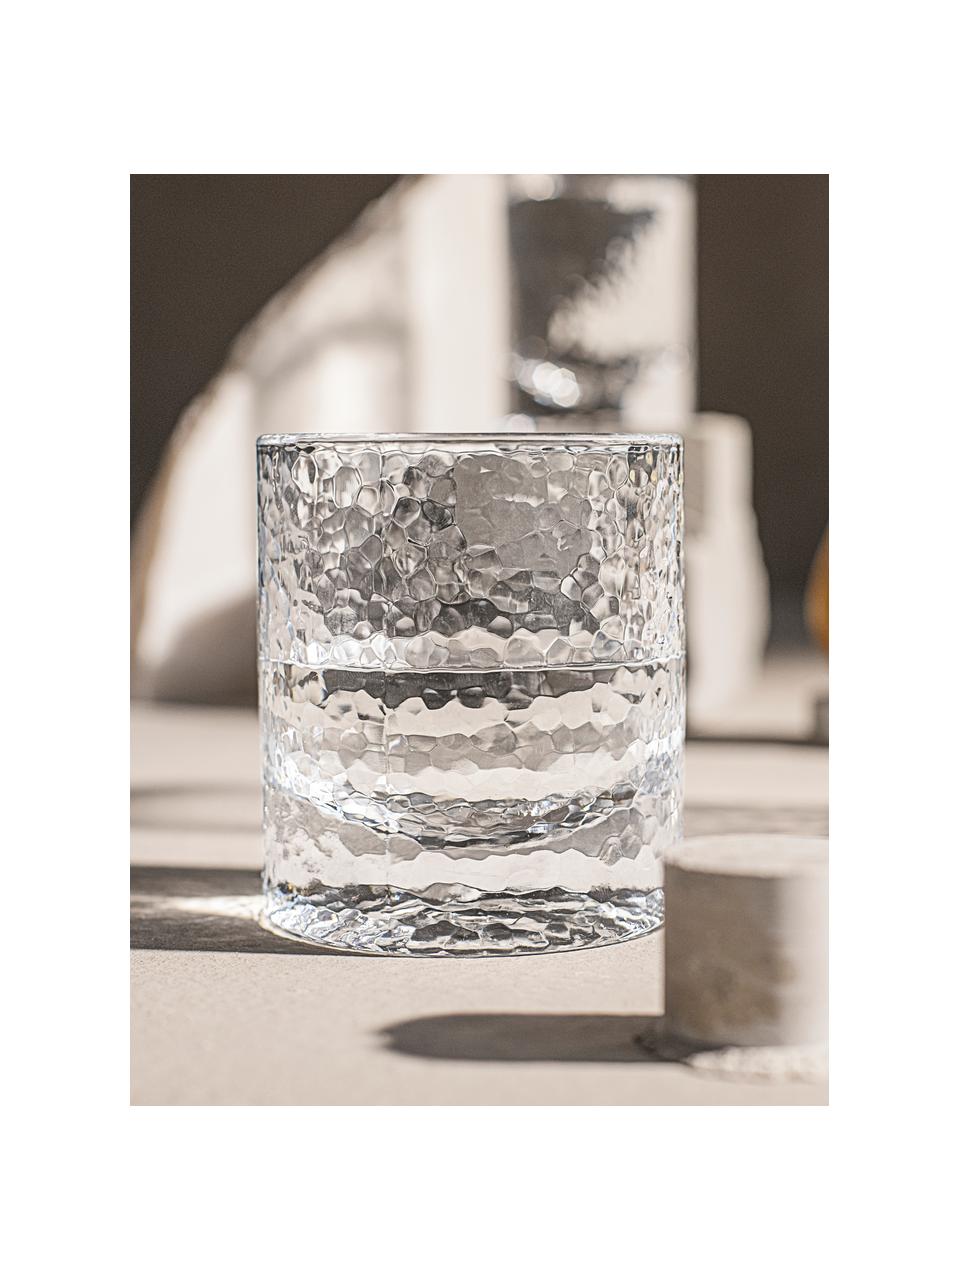 Waterglazen Forma met gestructureerde oppervlak, 2 stuks, Glas, Transparant, Ø 9 x H 10 cm, 300 ml